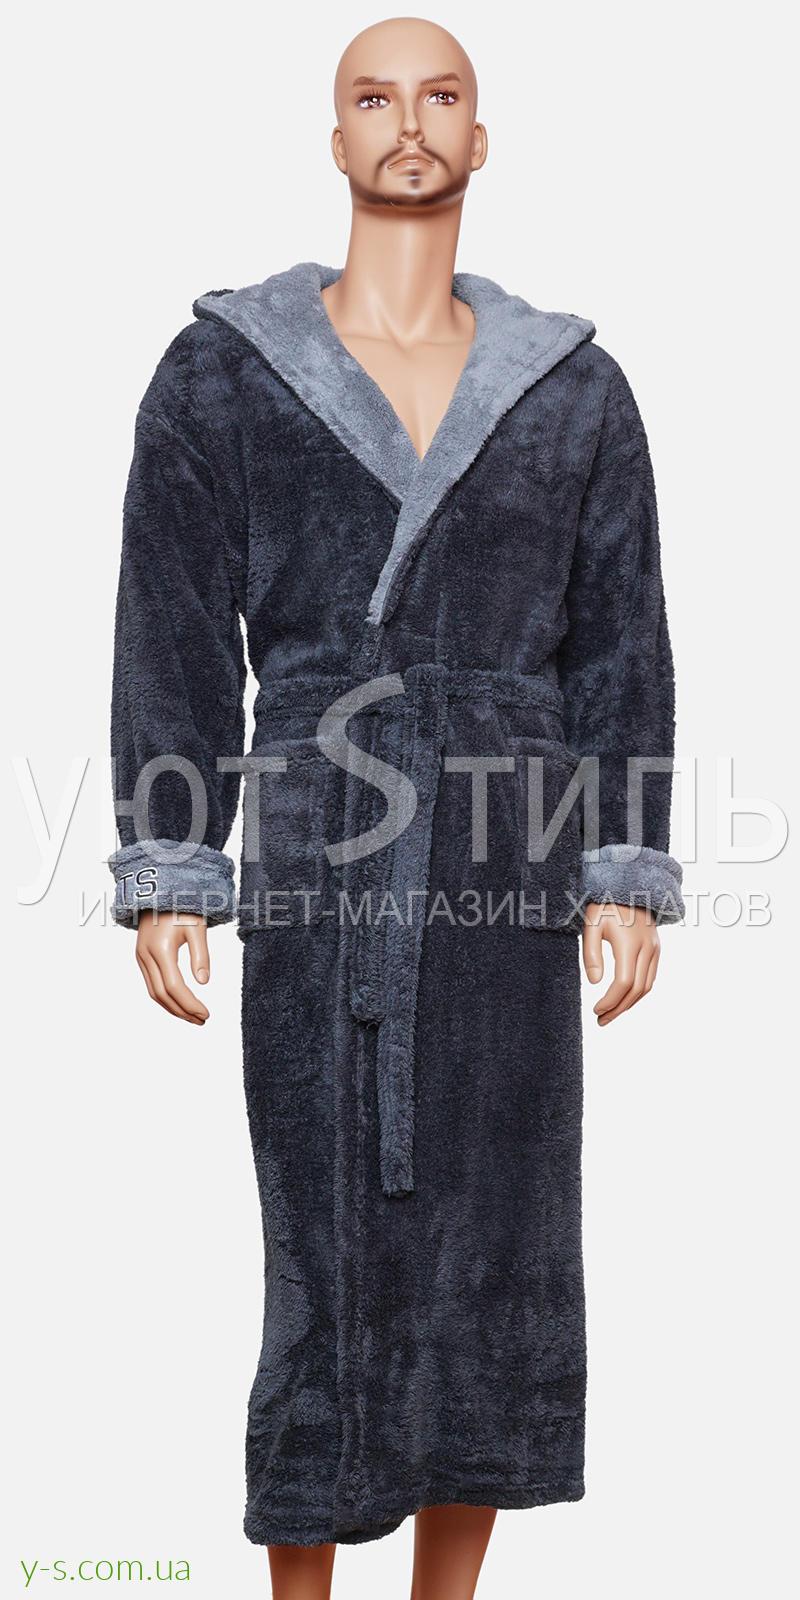 Мужской халат серого цвета WM2014 с надписью 